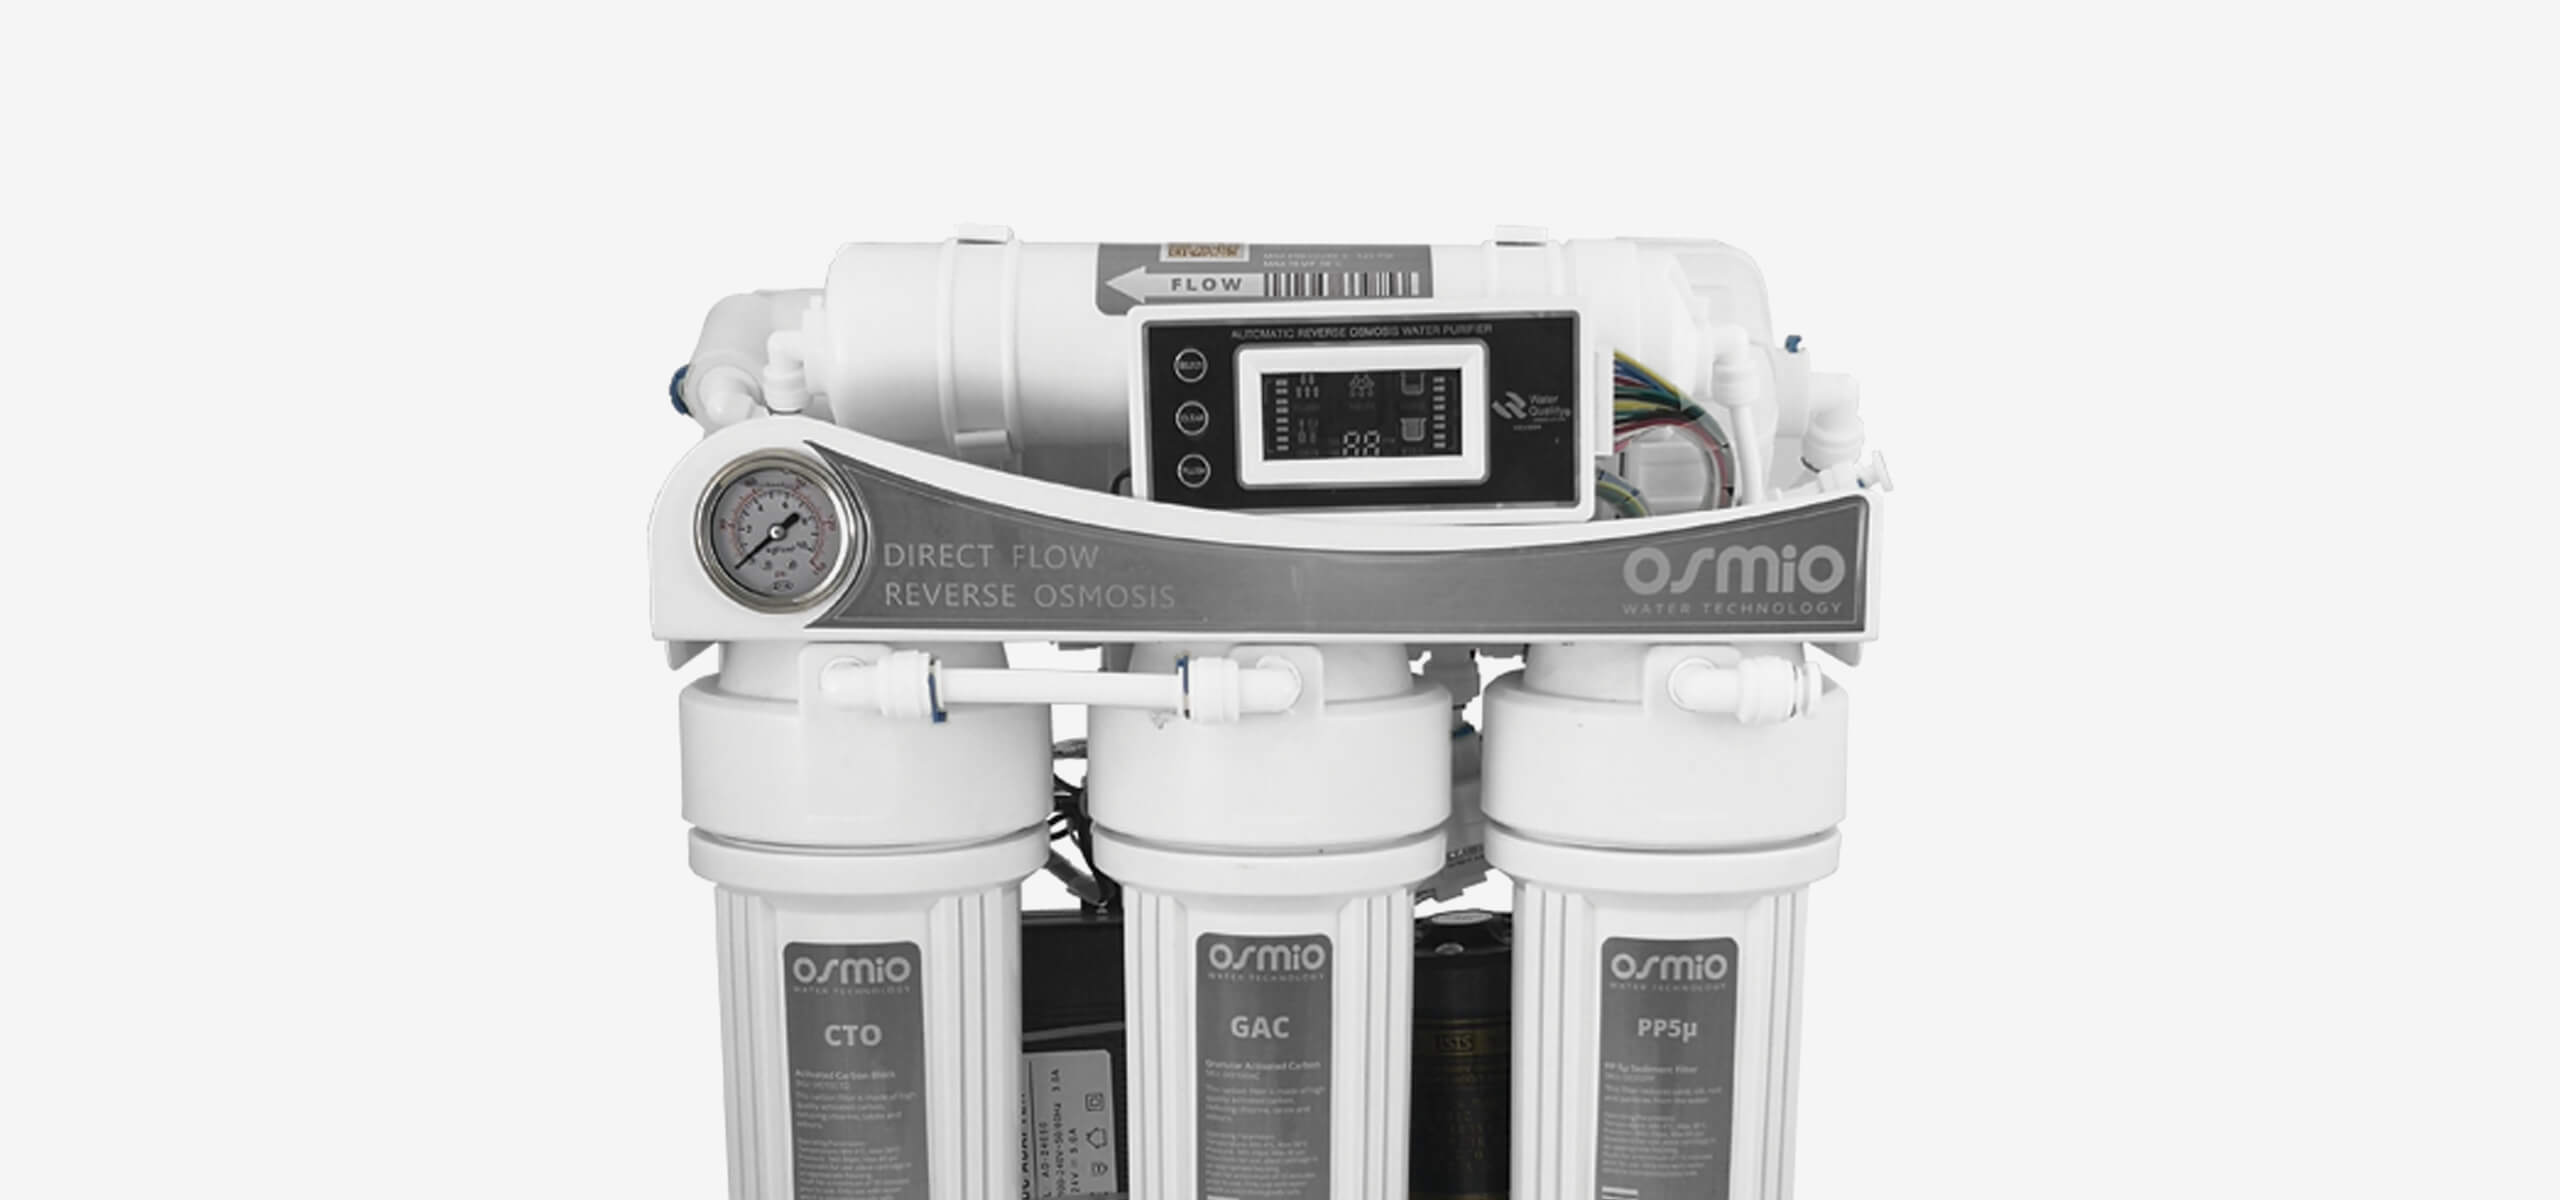 Osmio Duo Hydrogen Water Bottle 400ml